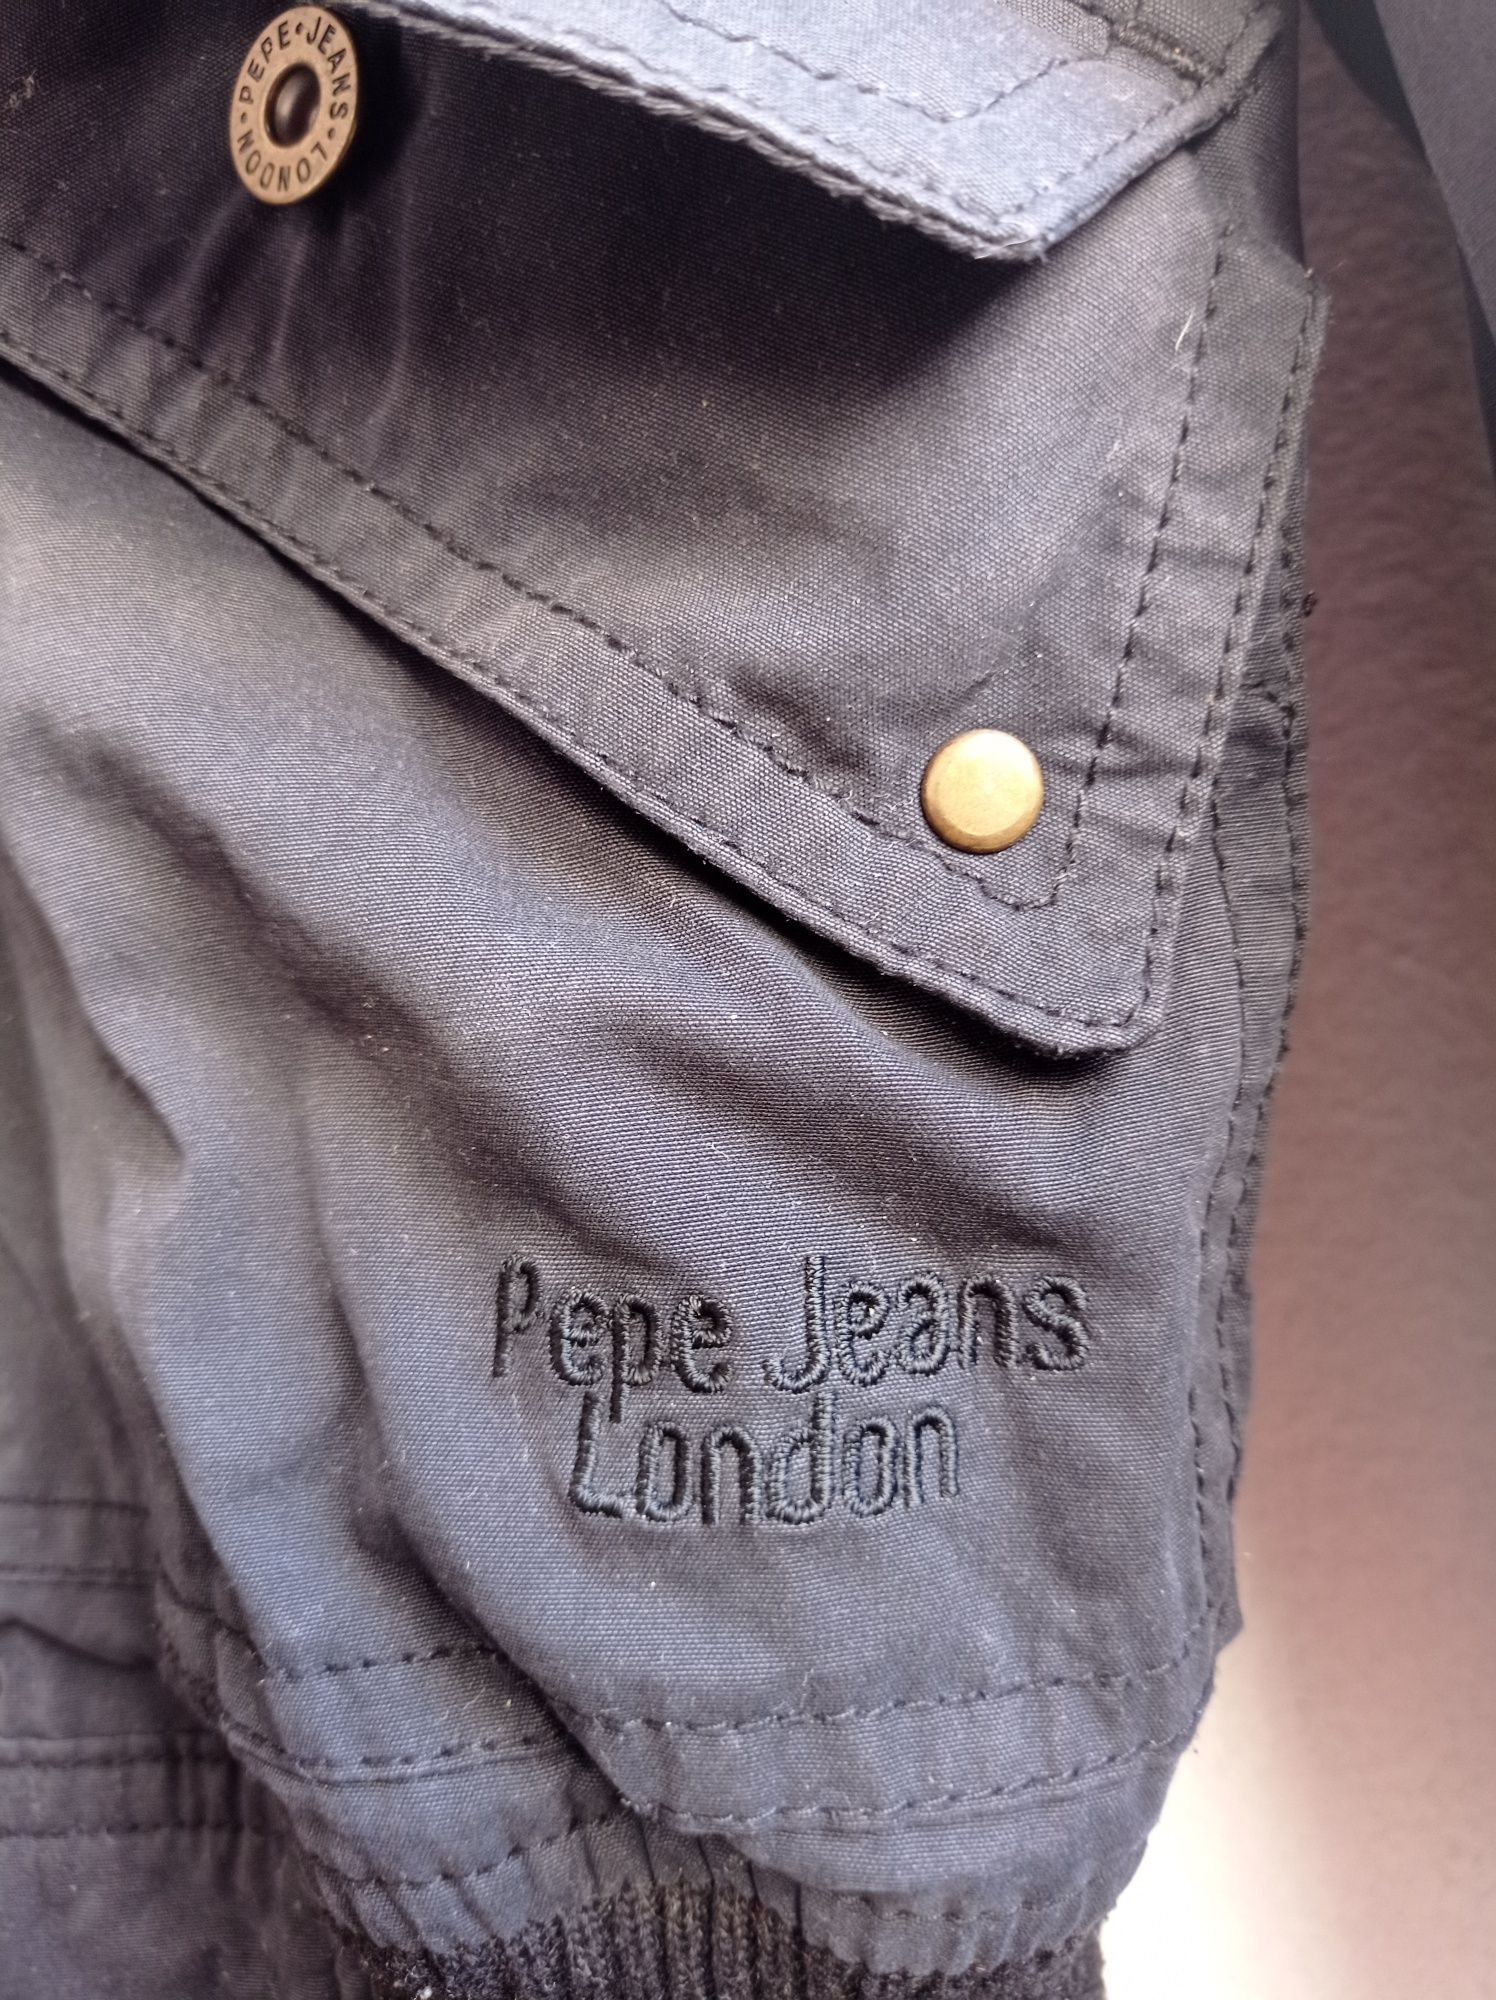 Blusão original Pepe jeans senhora